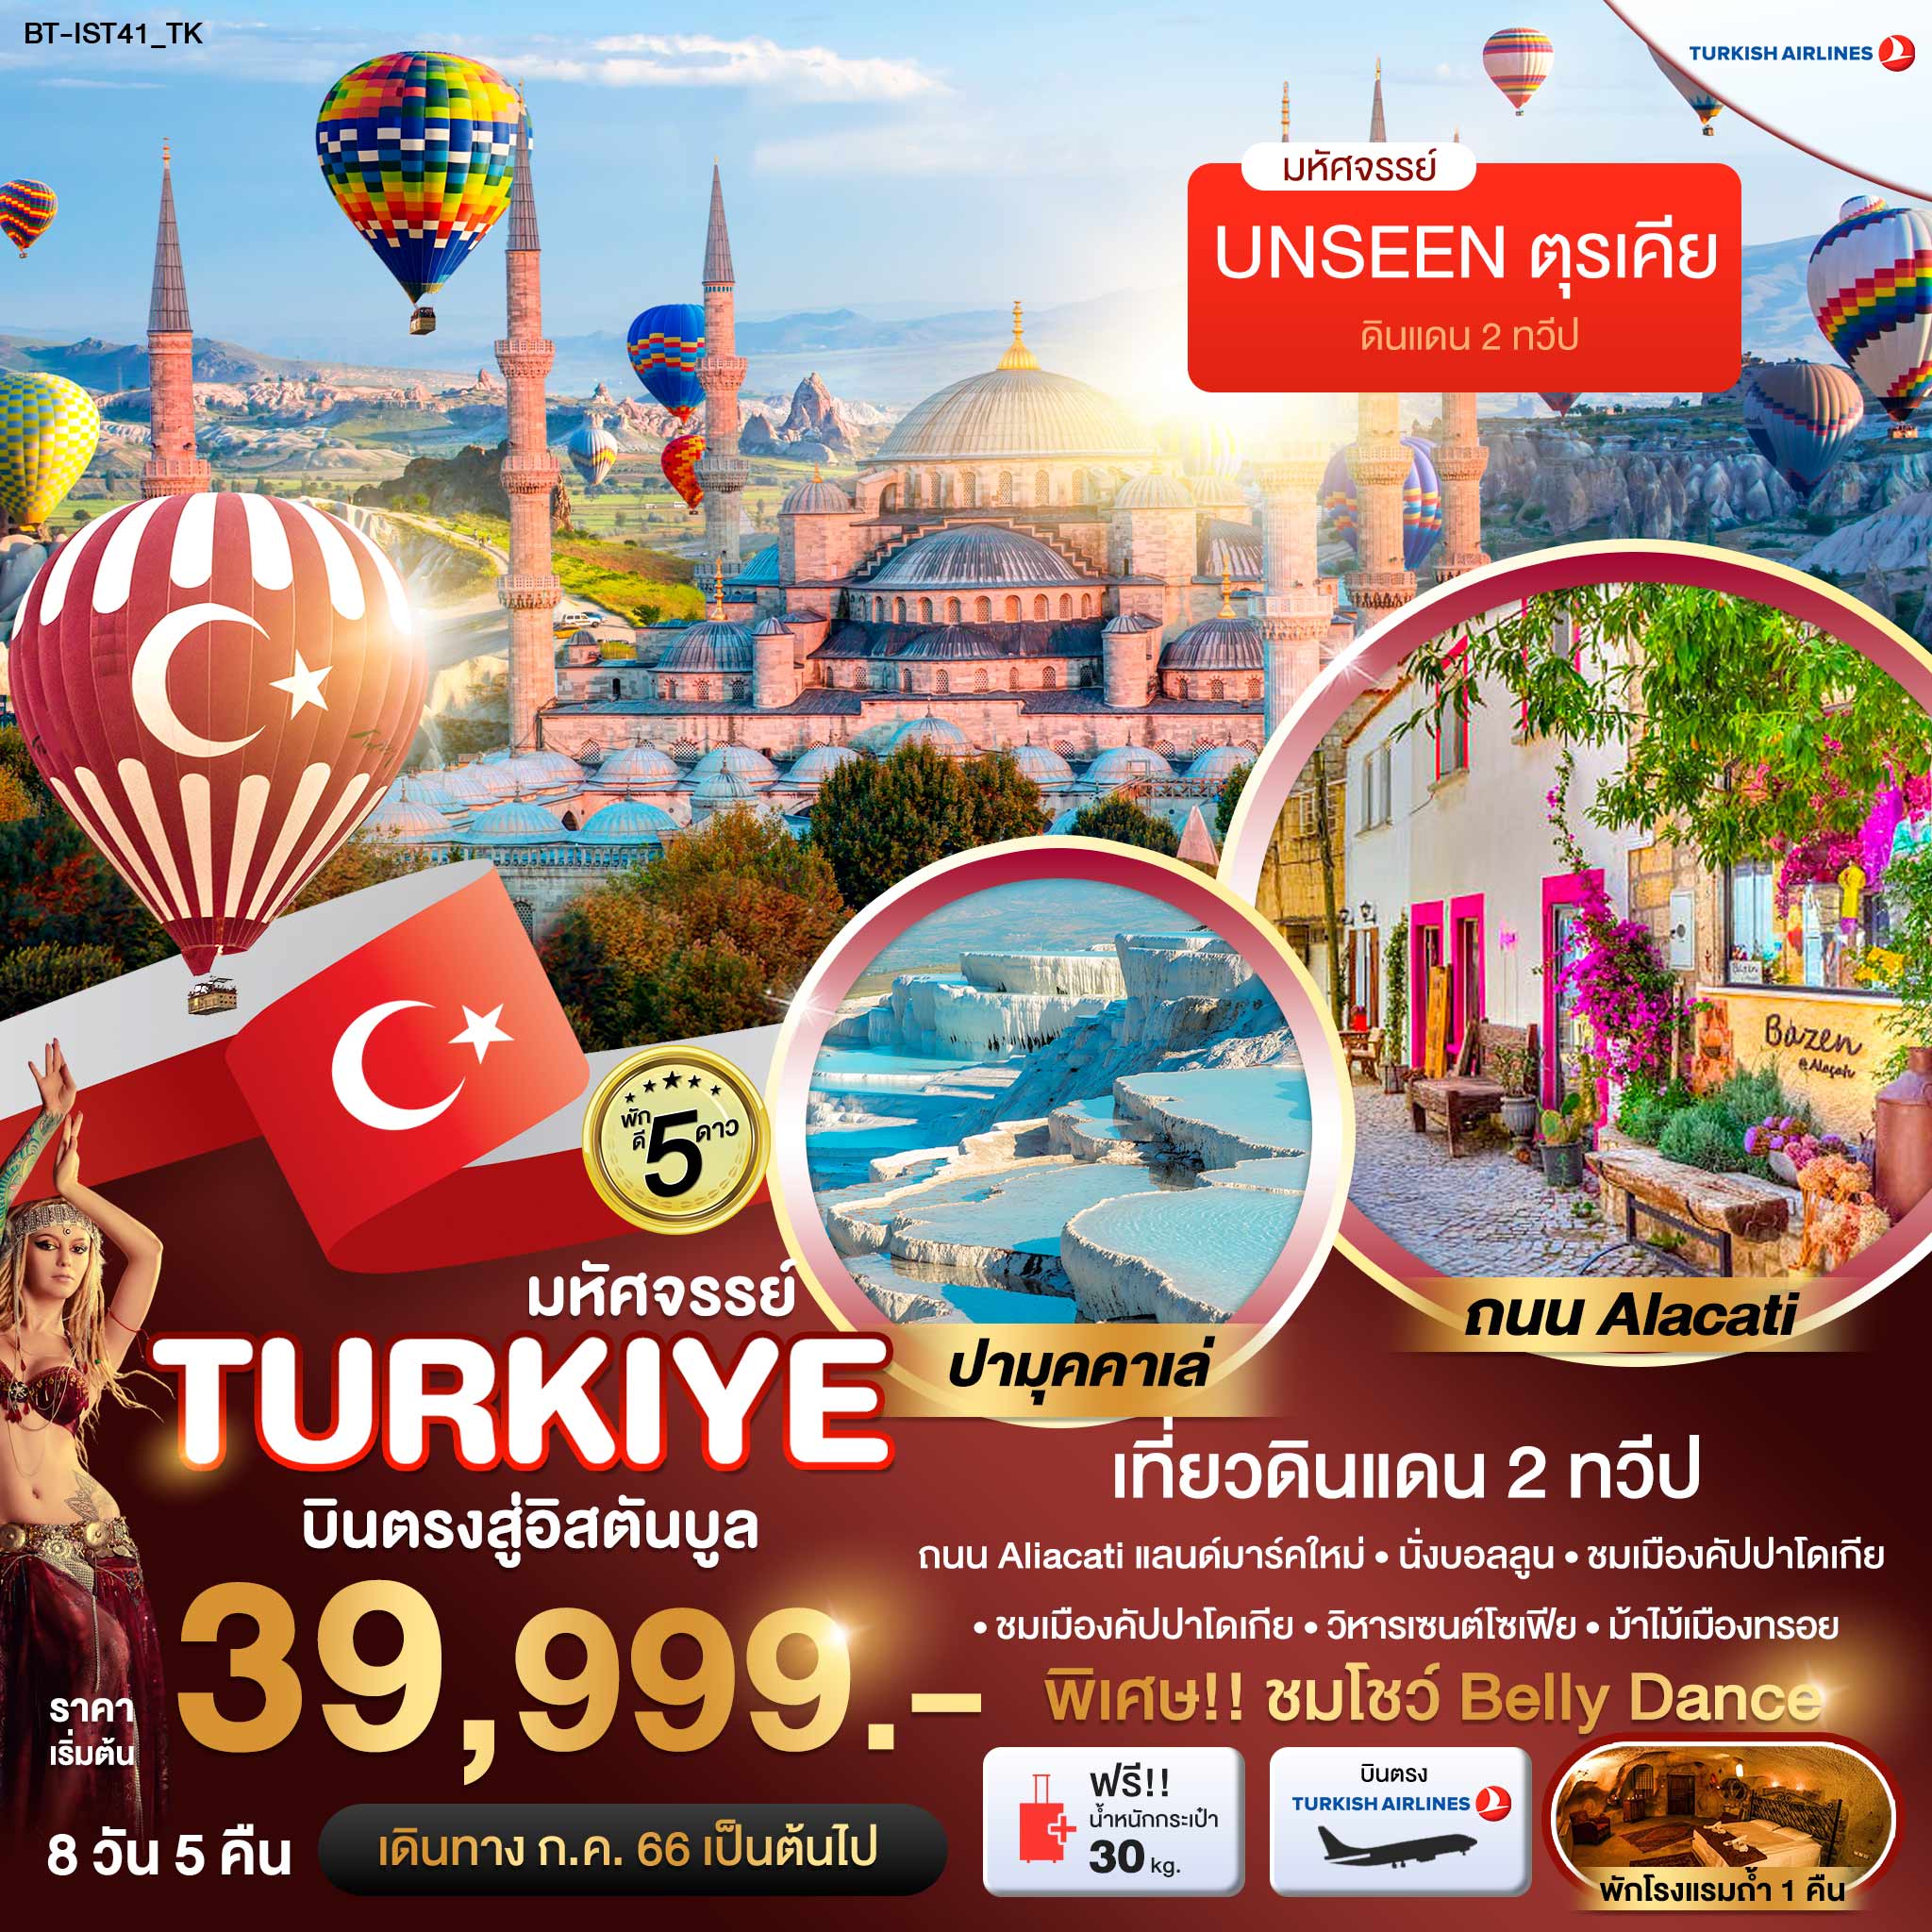 ทัวร์ตุรกี มหัศจรรย์..TURKIYE เมืองแห่งสีสัน ALACATI 8 วัน 5 คืน  (TK) ก.ค.-ส.ค. 66